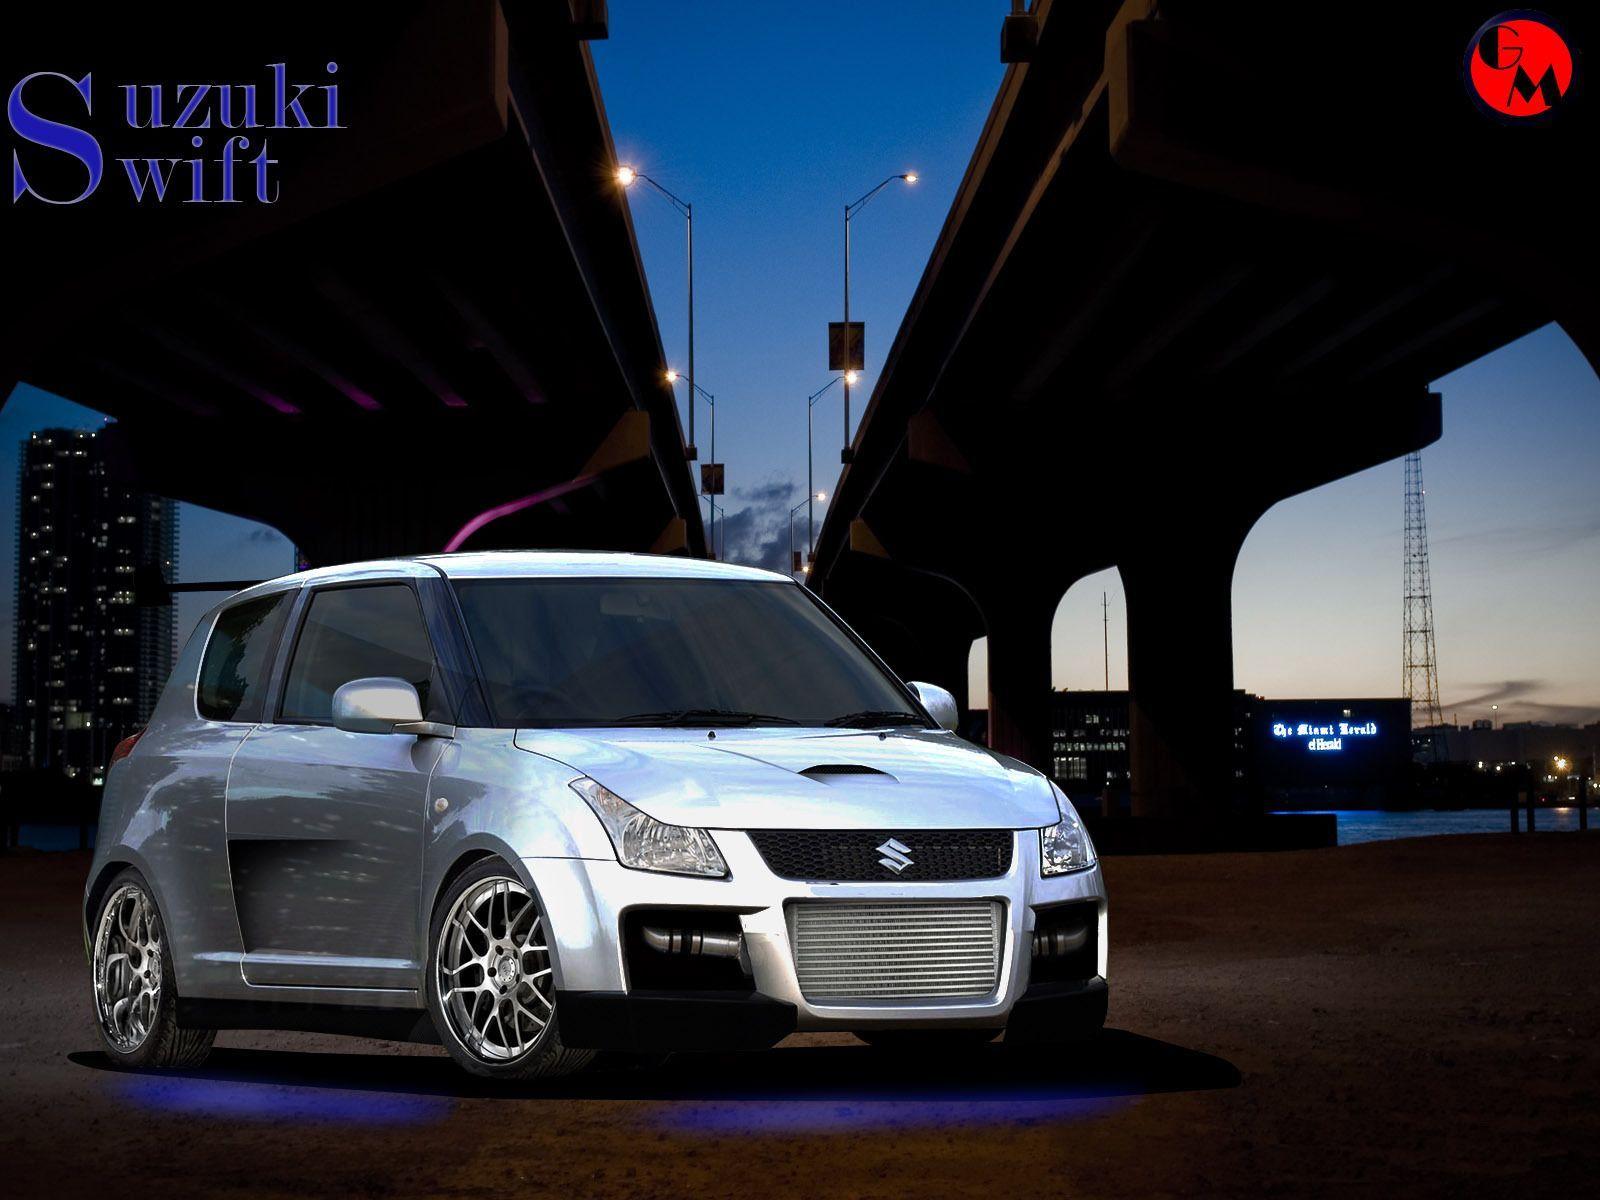 Suzuki Swift Wallpaper Desktop. Suzuki swift, Suzuki swift sport, Reliable cars